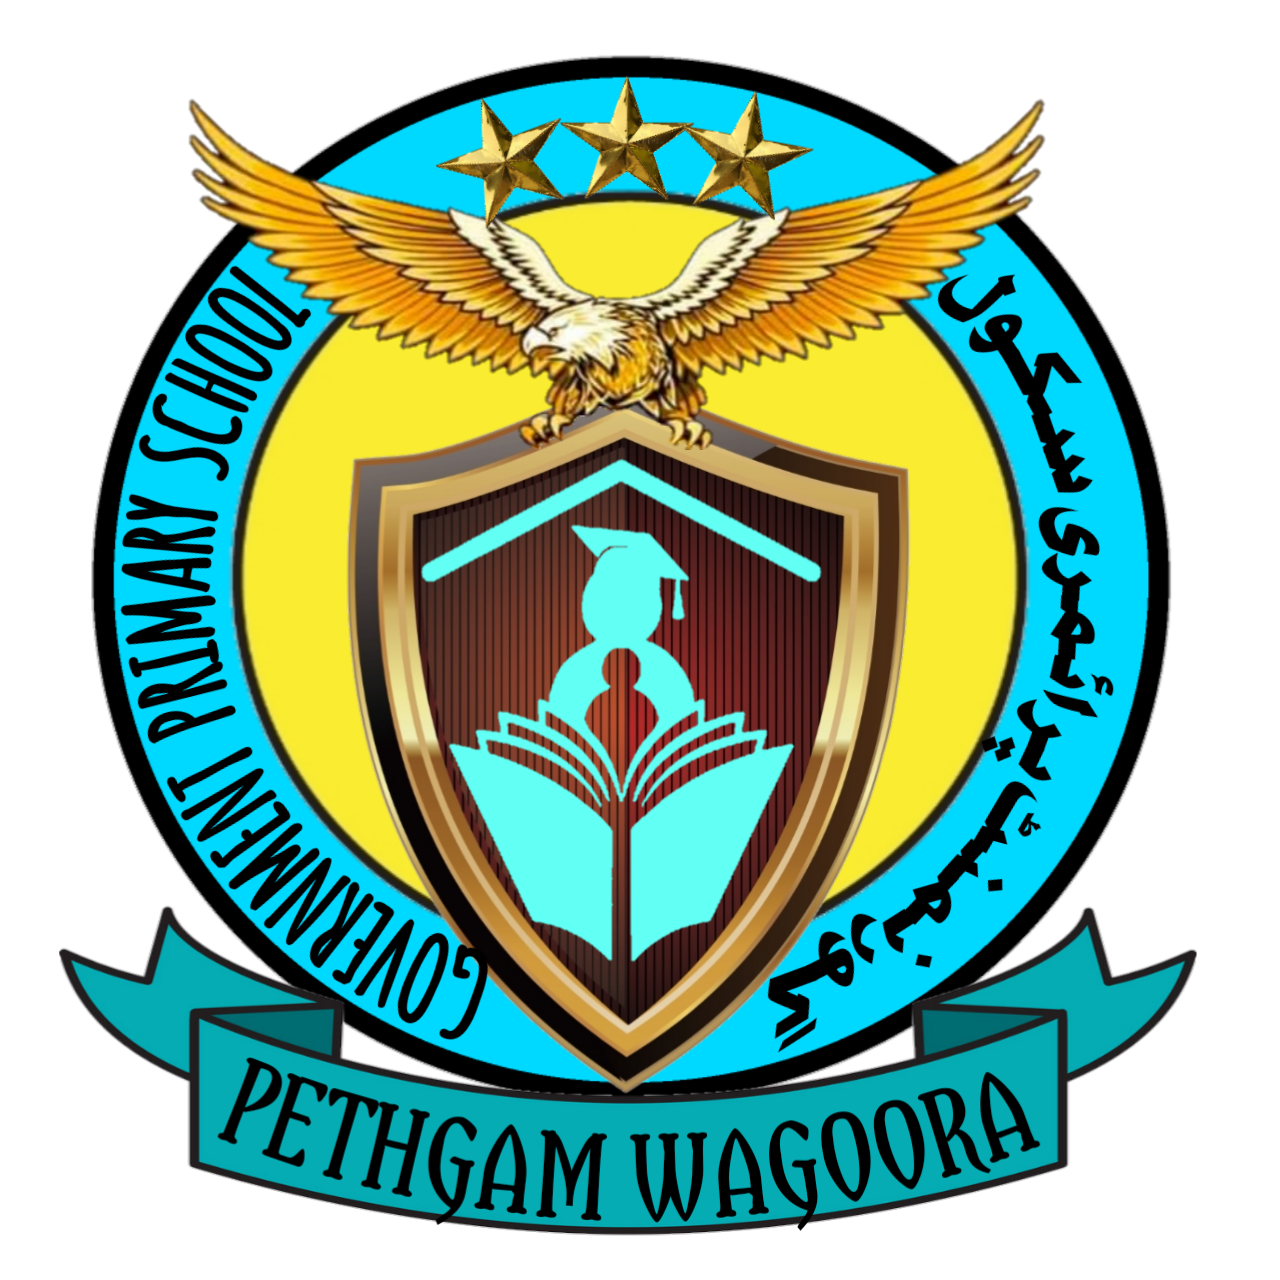 GOVERNMENT PRIMARY SCHOOL PETHGAM WAGOORA|Schools|Education